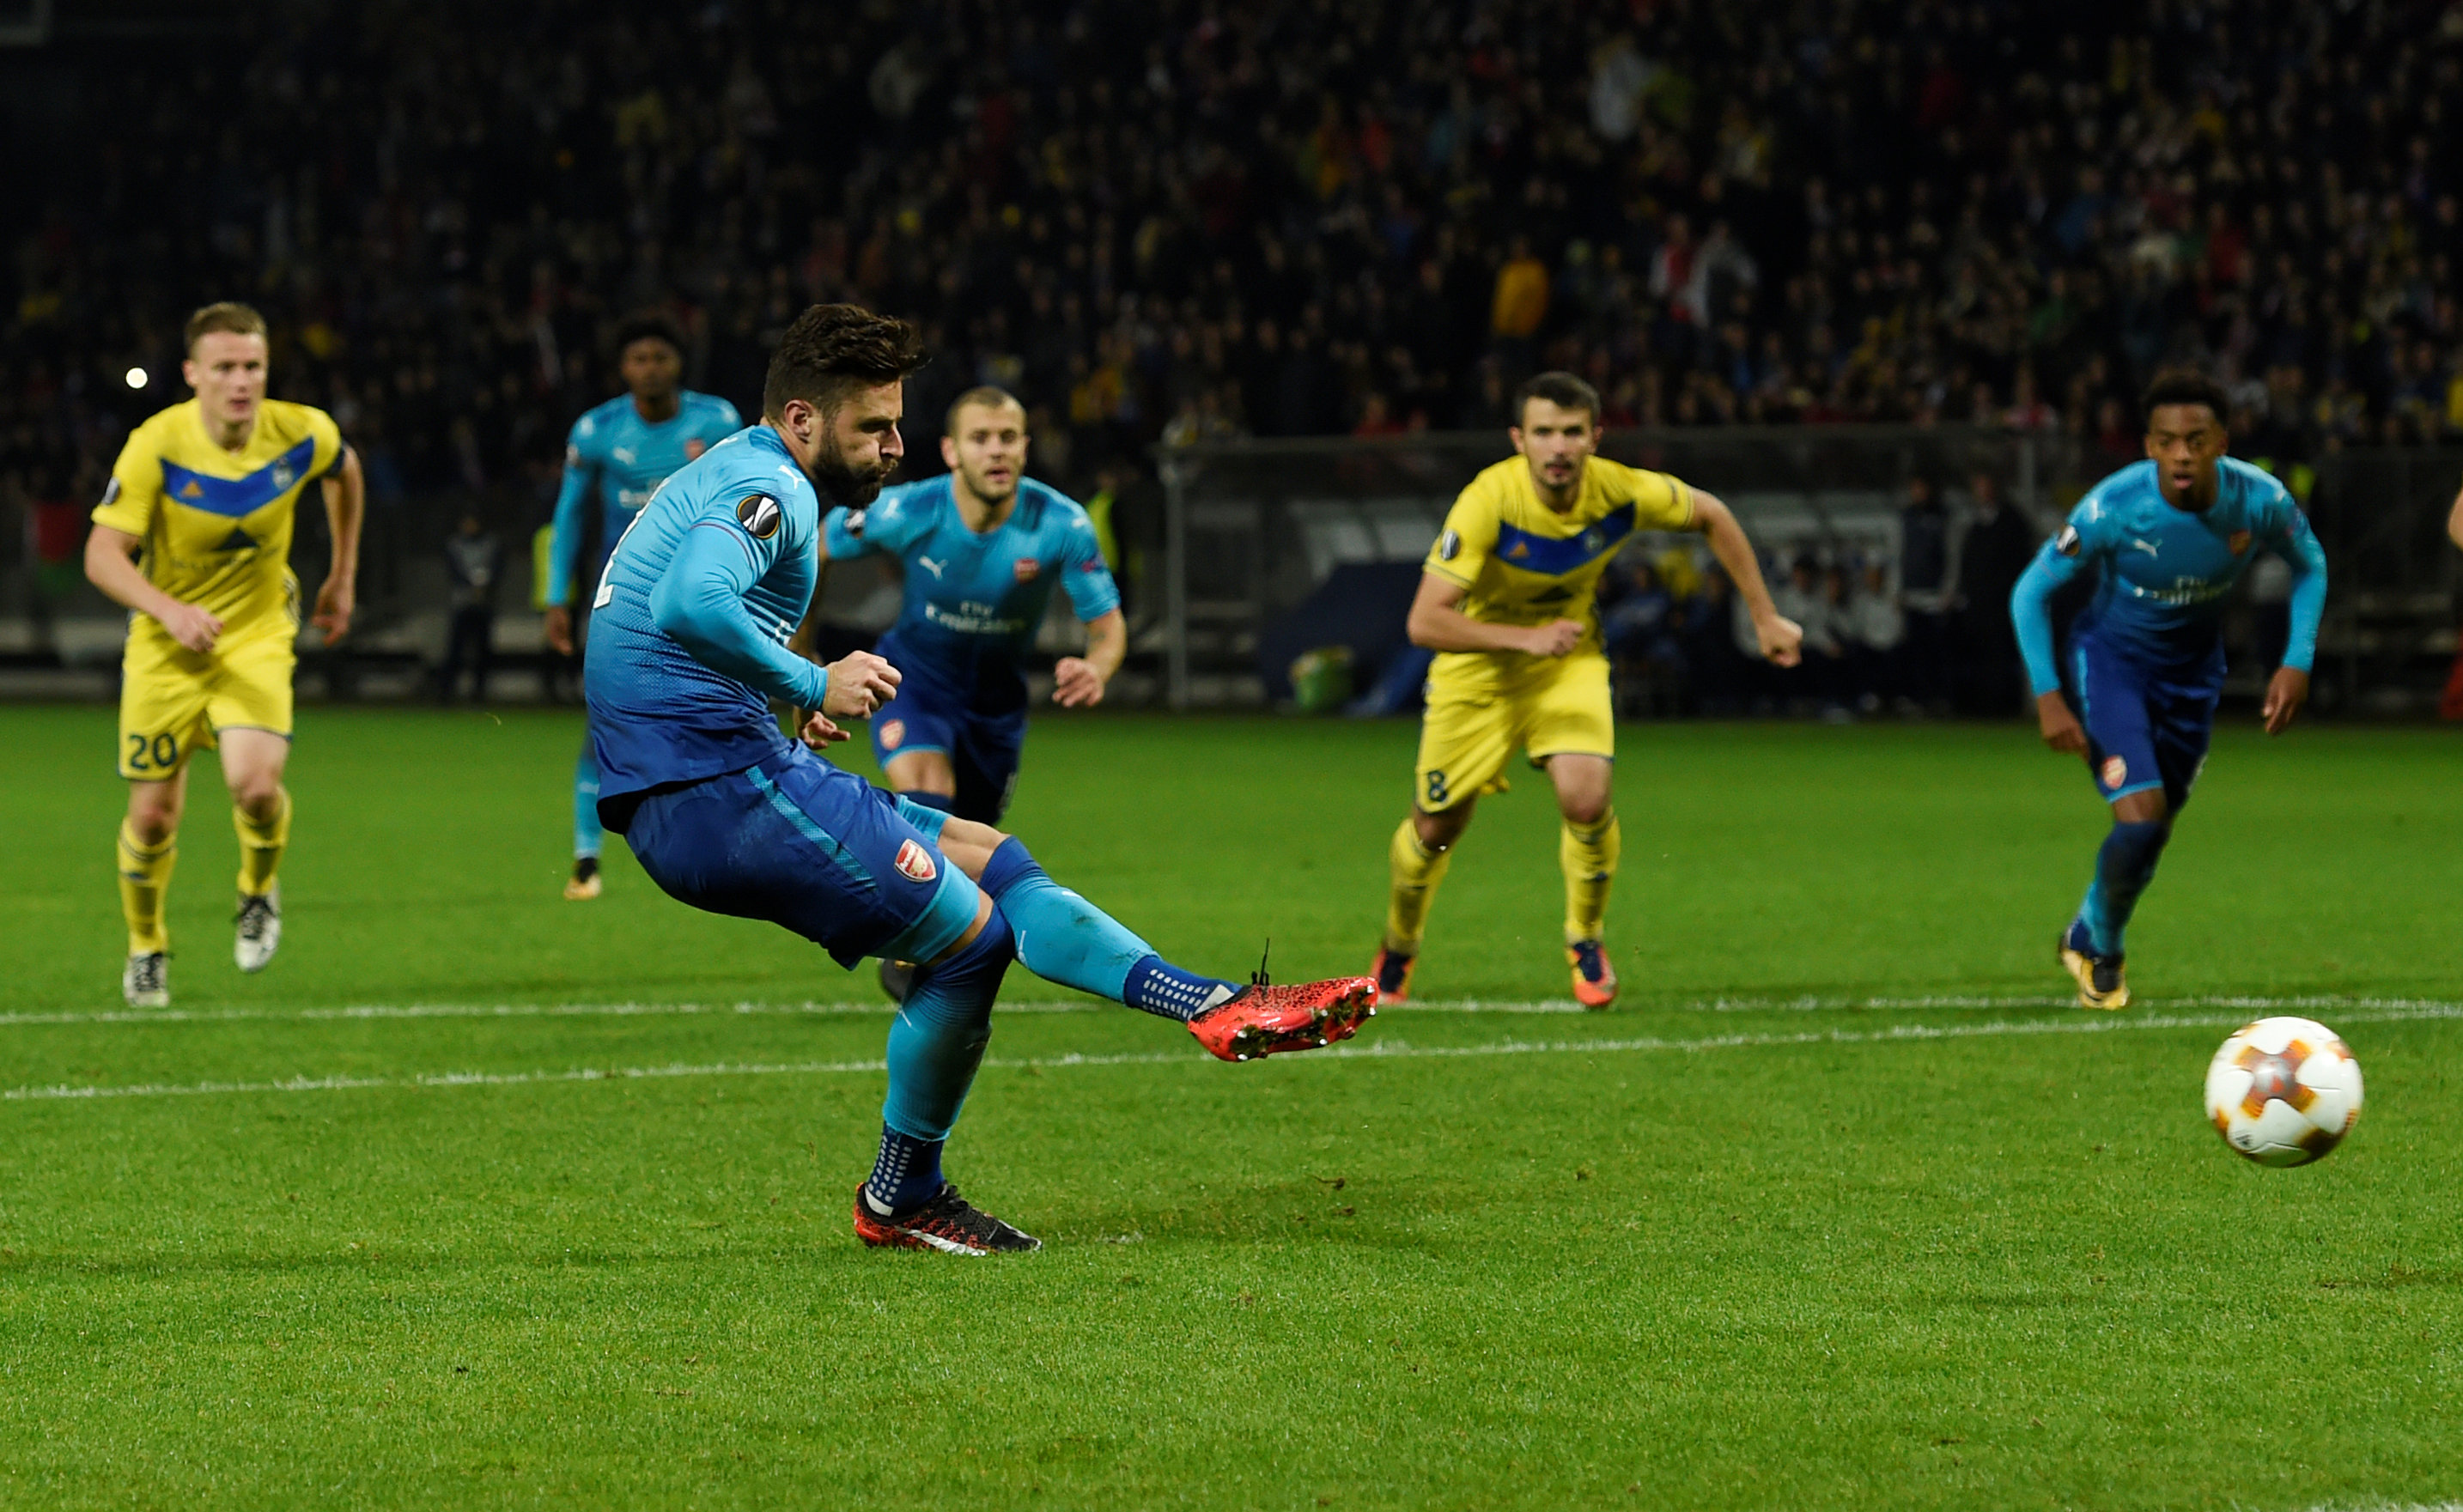 Giroud đá phạt 11m thành công nâng tỉ số trận đấu lên 4-1 cho Arsenal. Ảnh: REUTERS